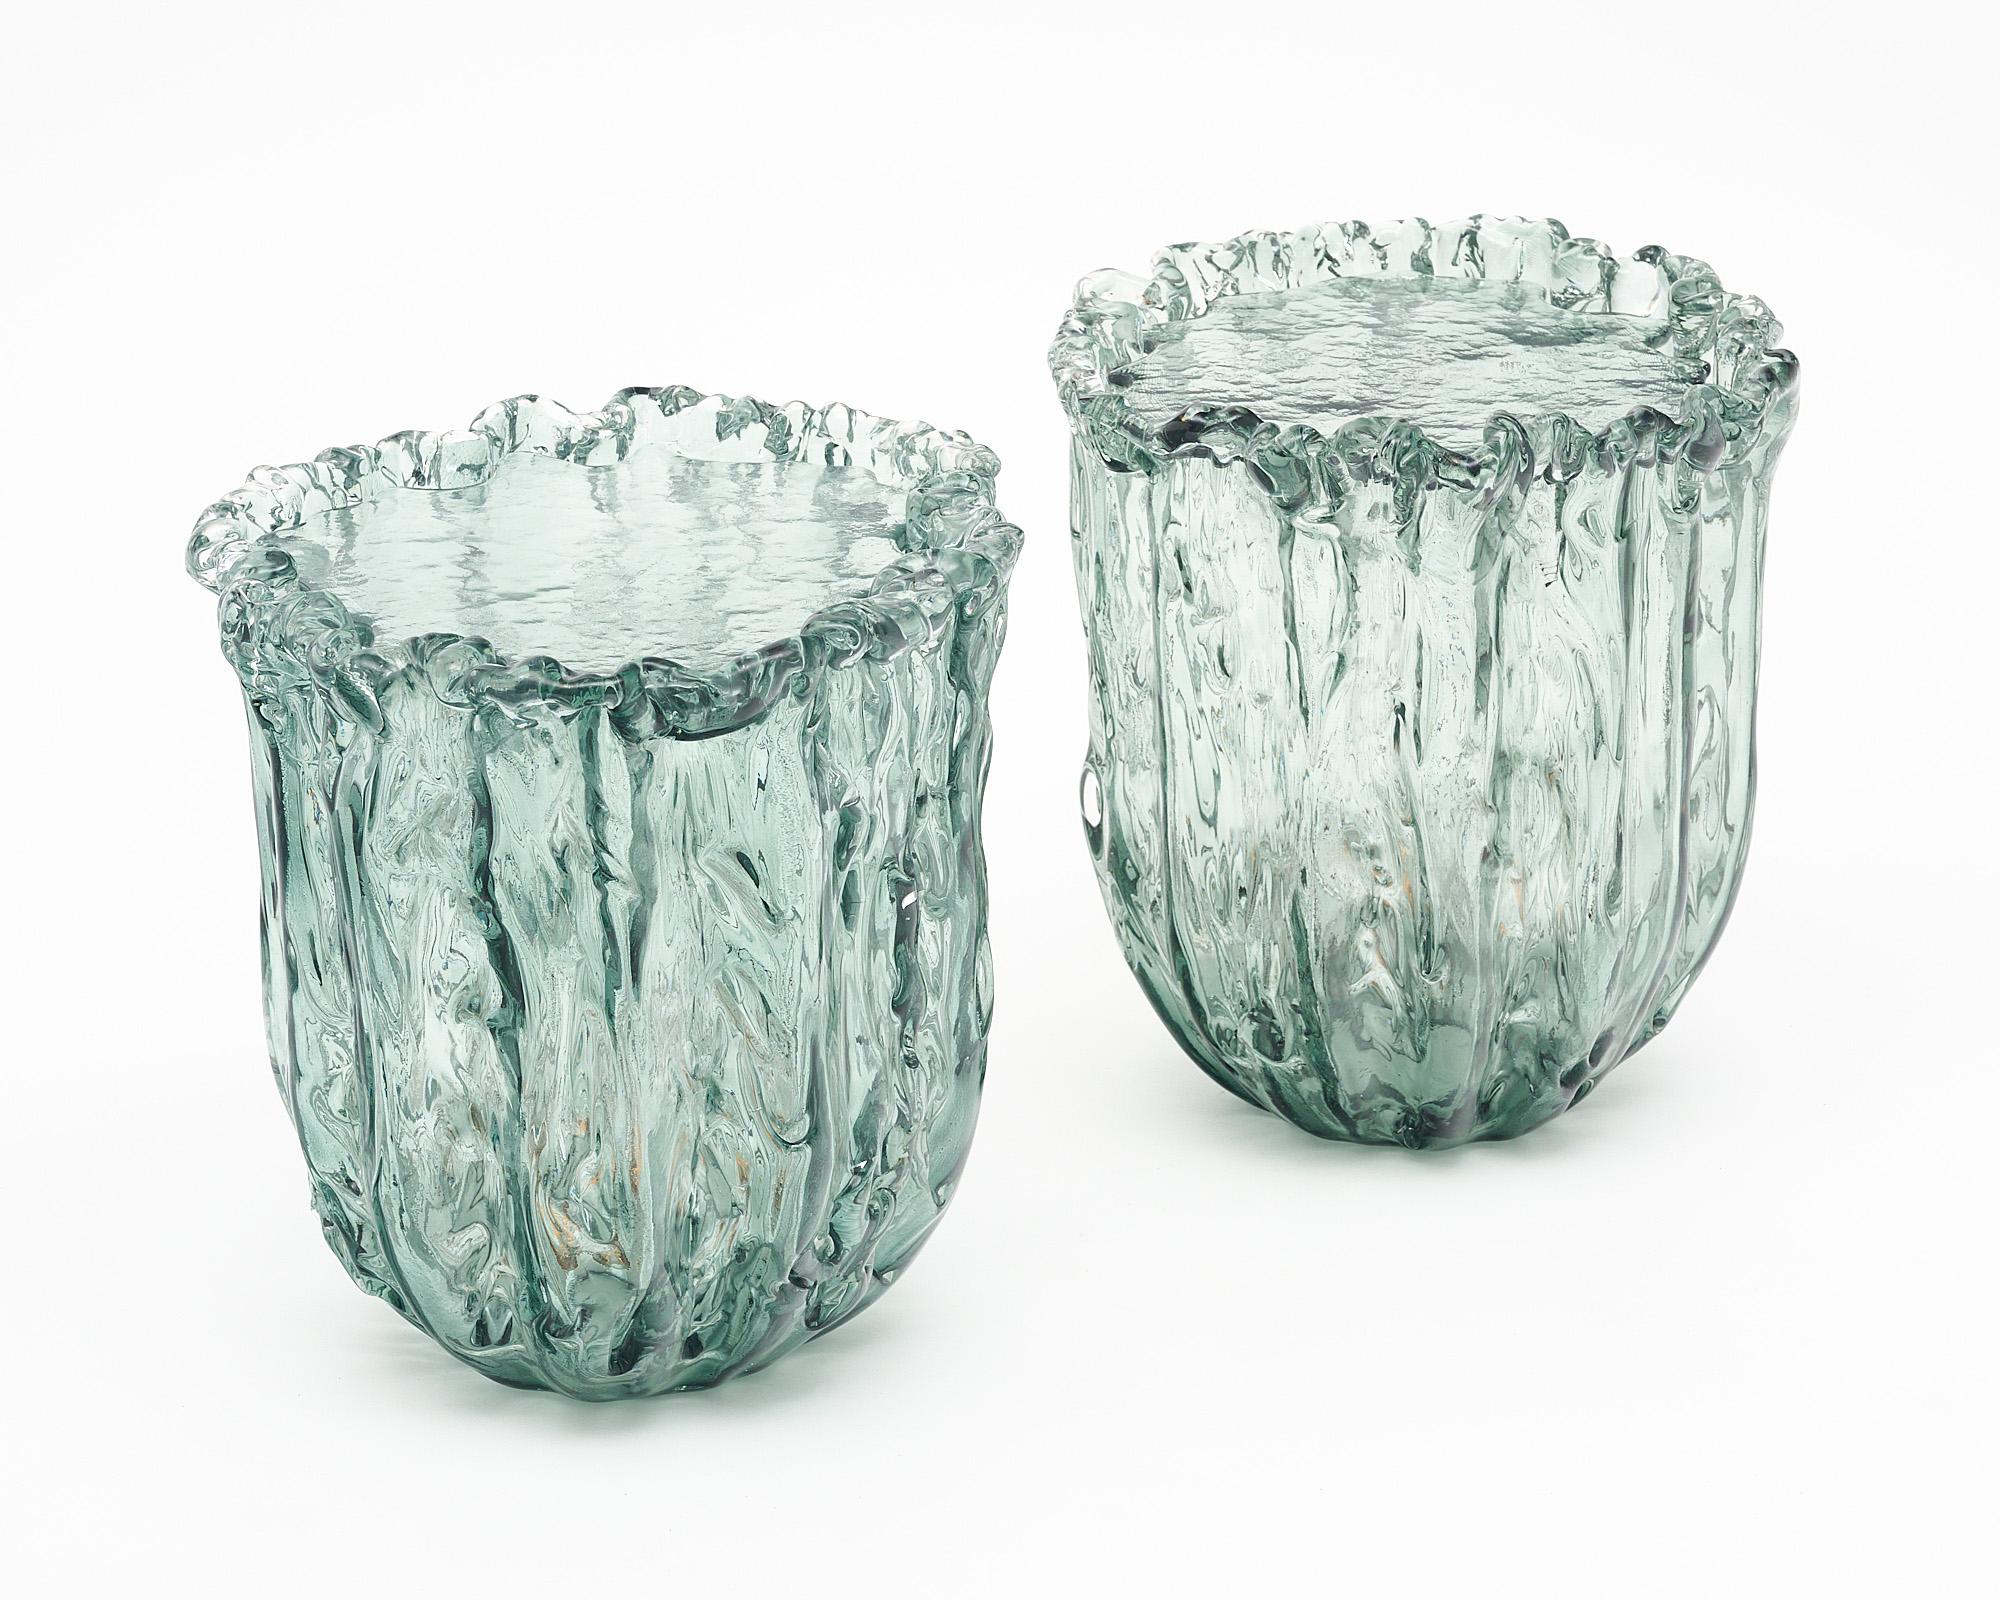 Ein Paar Beistelltische aus Glas von Naoto Fukasawa, hergestellt in Murano, Italien. Die Tische sind mundgeblasen und haben eine organische Form. Eine separate Glasabdeckung passt perfekt in den Deckel. Sie sind im Inneren elektrifiziert, so dass